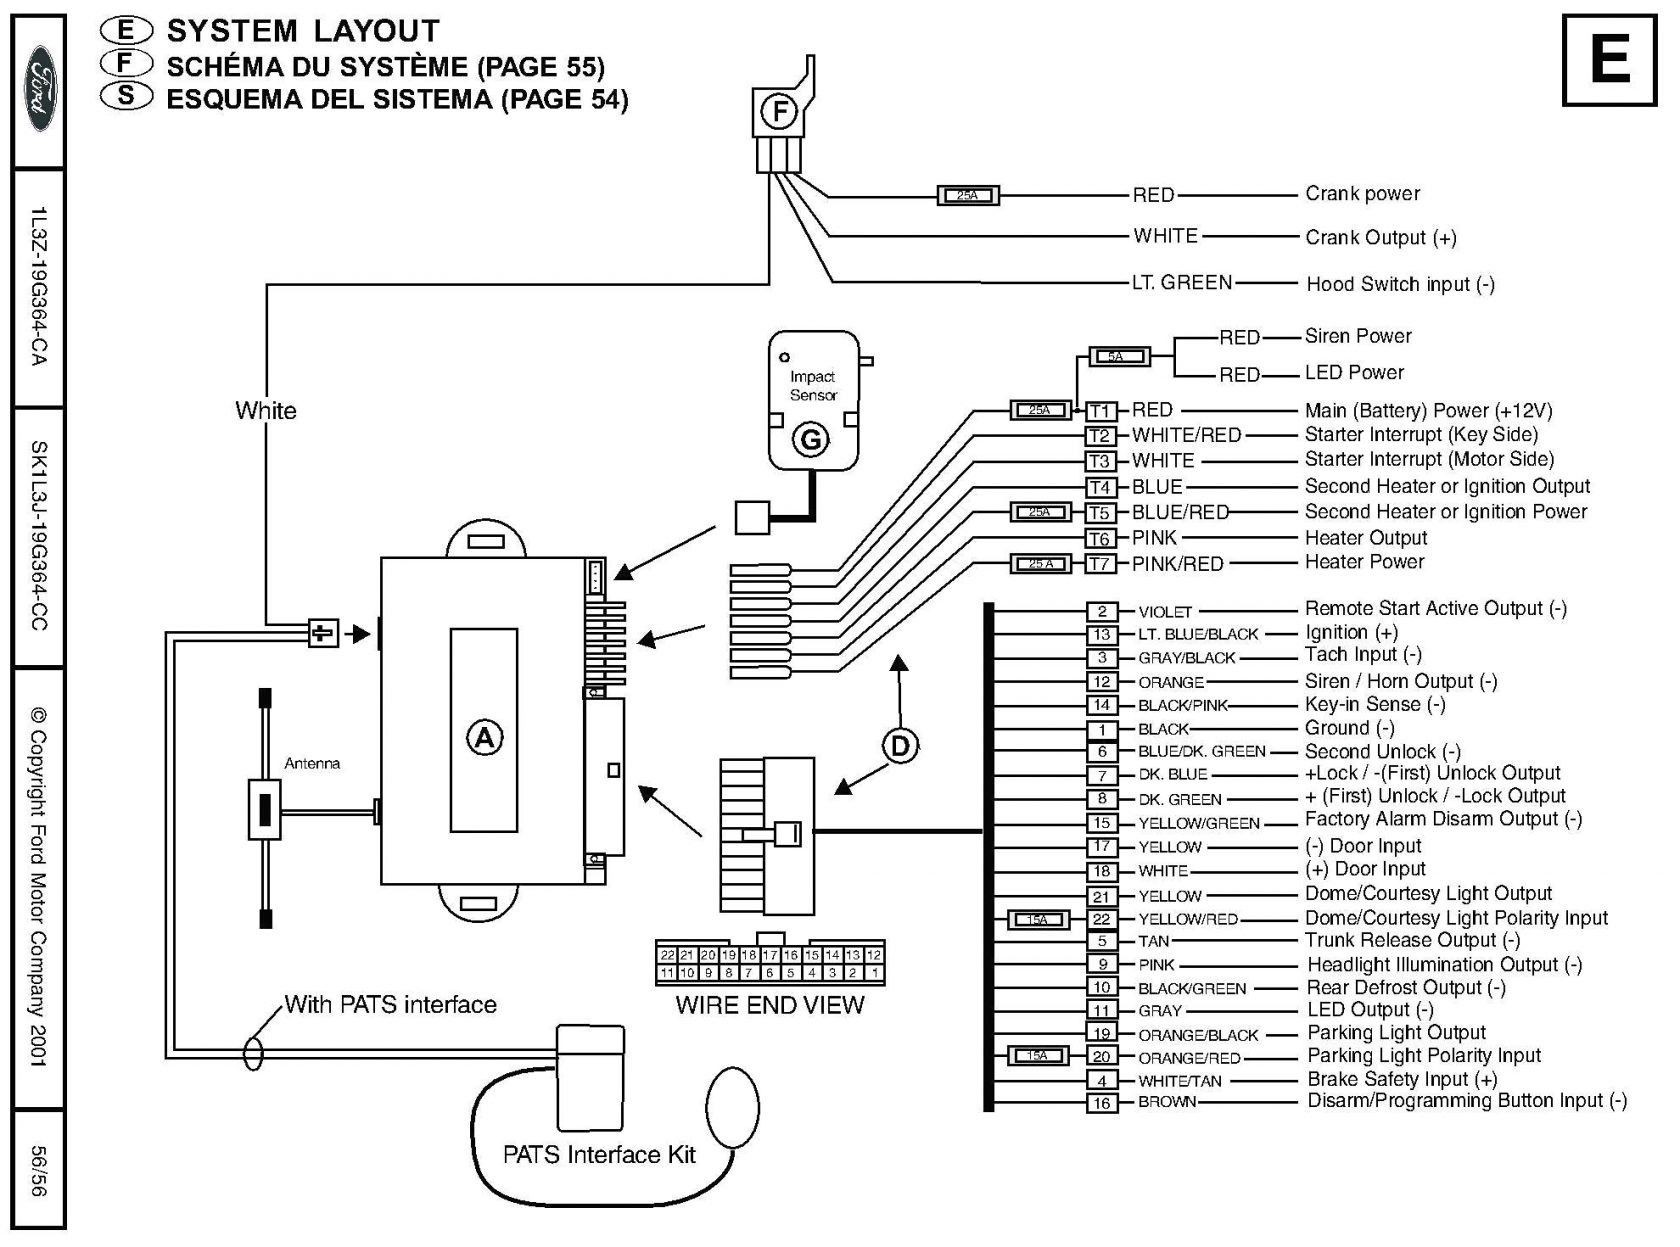 Remote Start Wiring Diagrams Karr Car Alarm Wiring Diagram Wiring Diagram Options Of Remote Start Wiring Diagrams